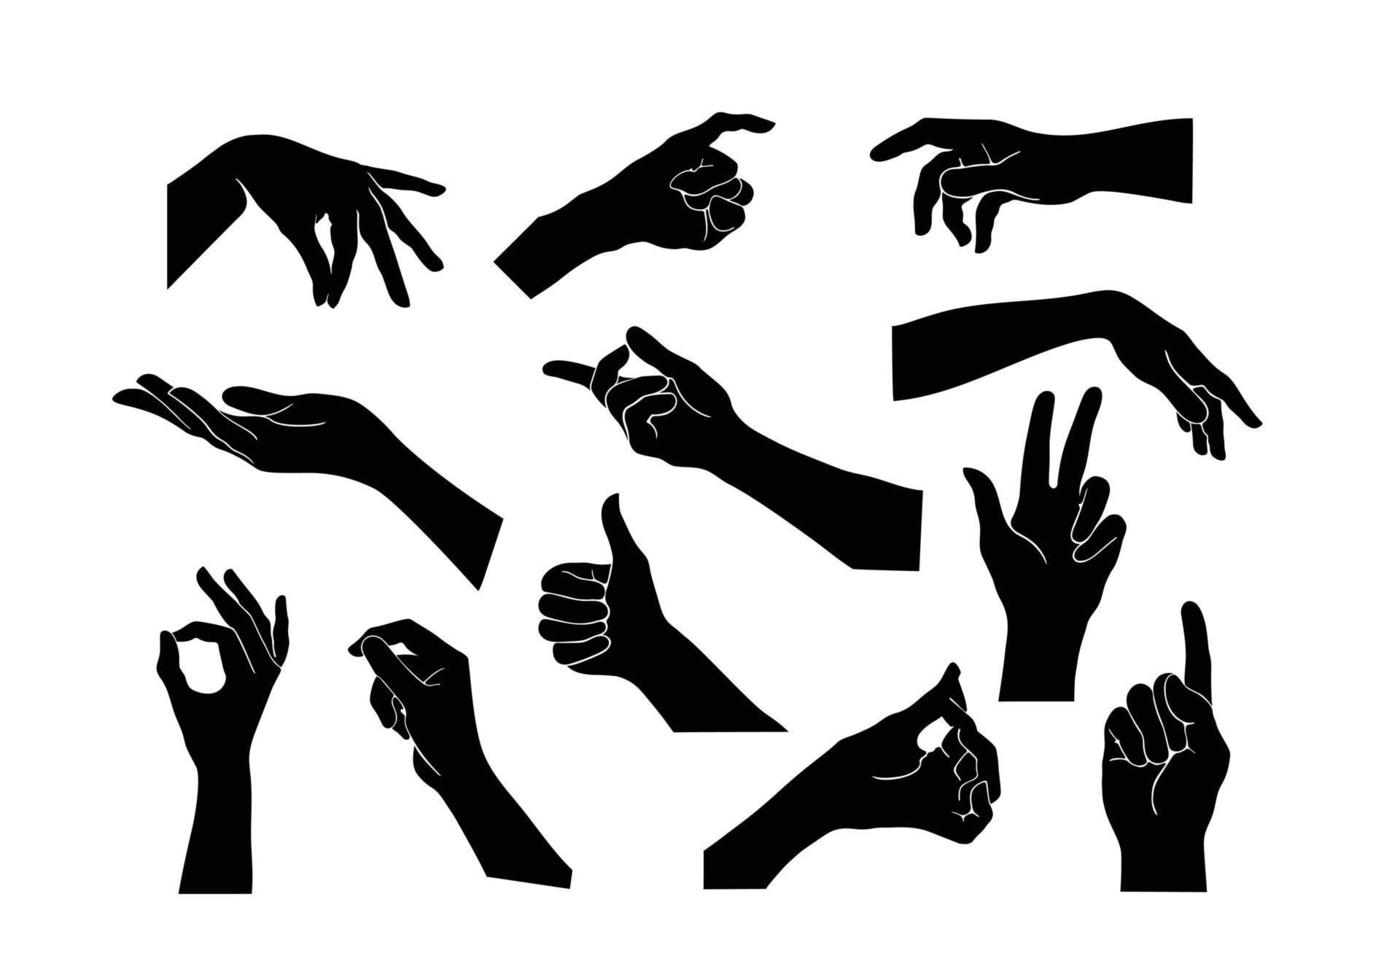 insieme di raccolta di vettore di gesti delle mani. gesto della mano nera come una silhouette o l'ombra delle mani. illustrazioni di movimento del corpo umano in nero.